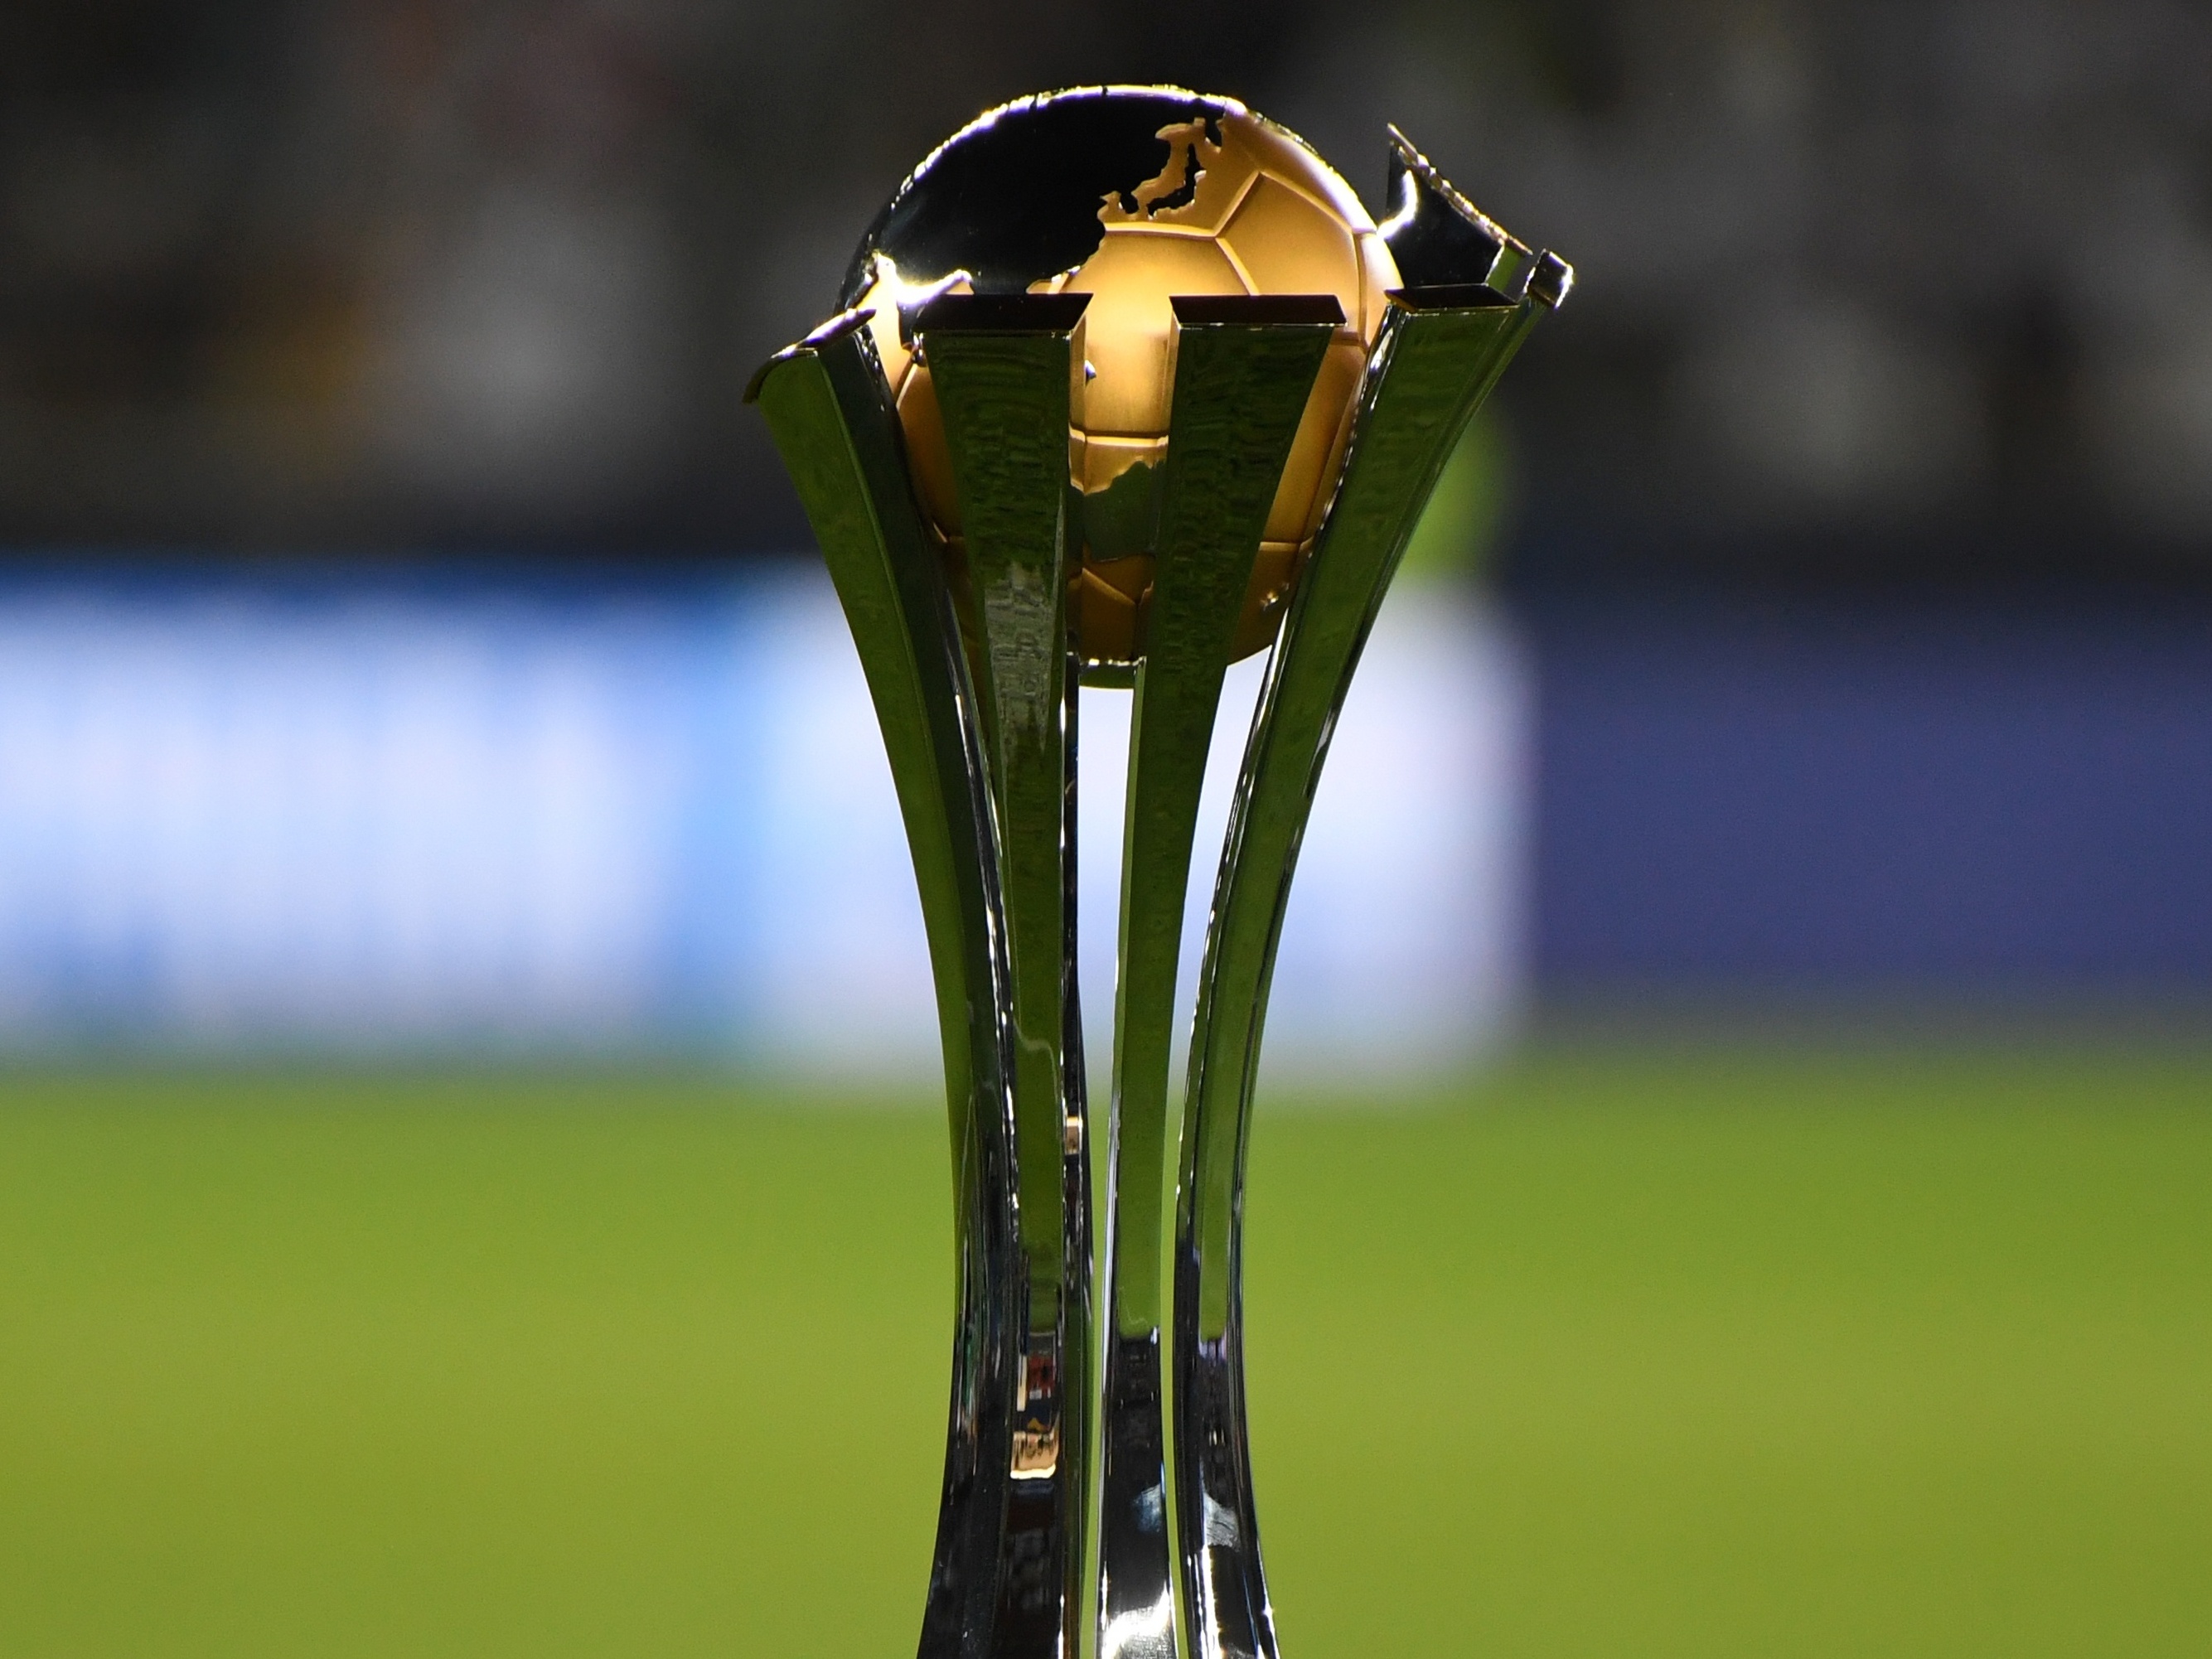 Japão desiste de sediar Mundial de Clubes de 2021; Fifa começa a avaliar  novas sedes - ESPN